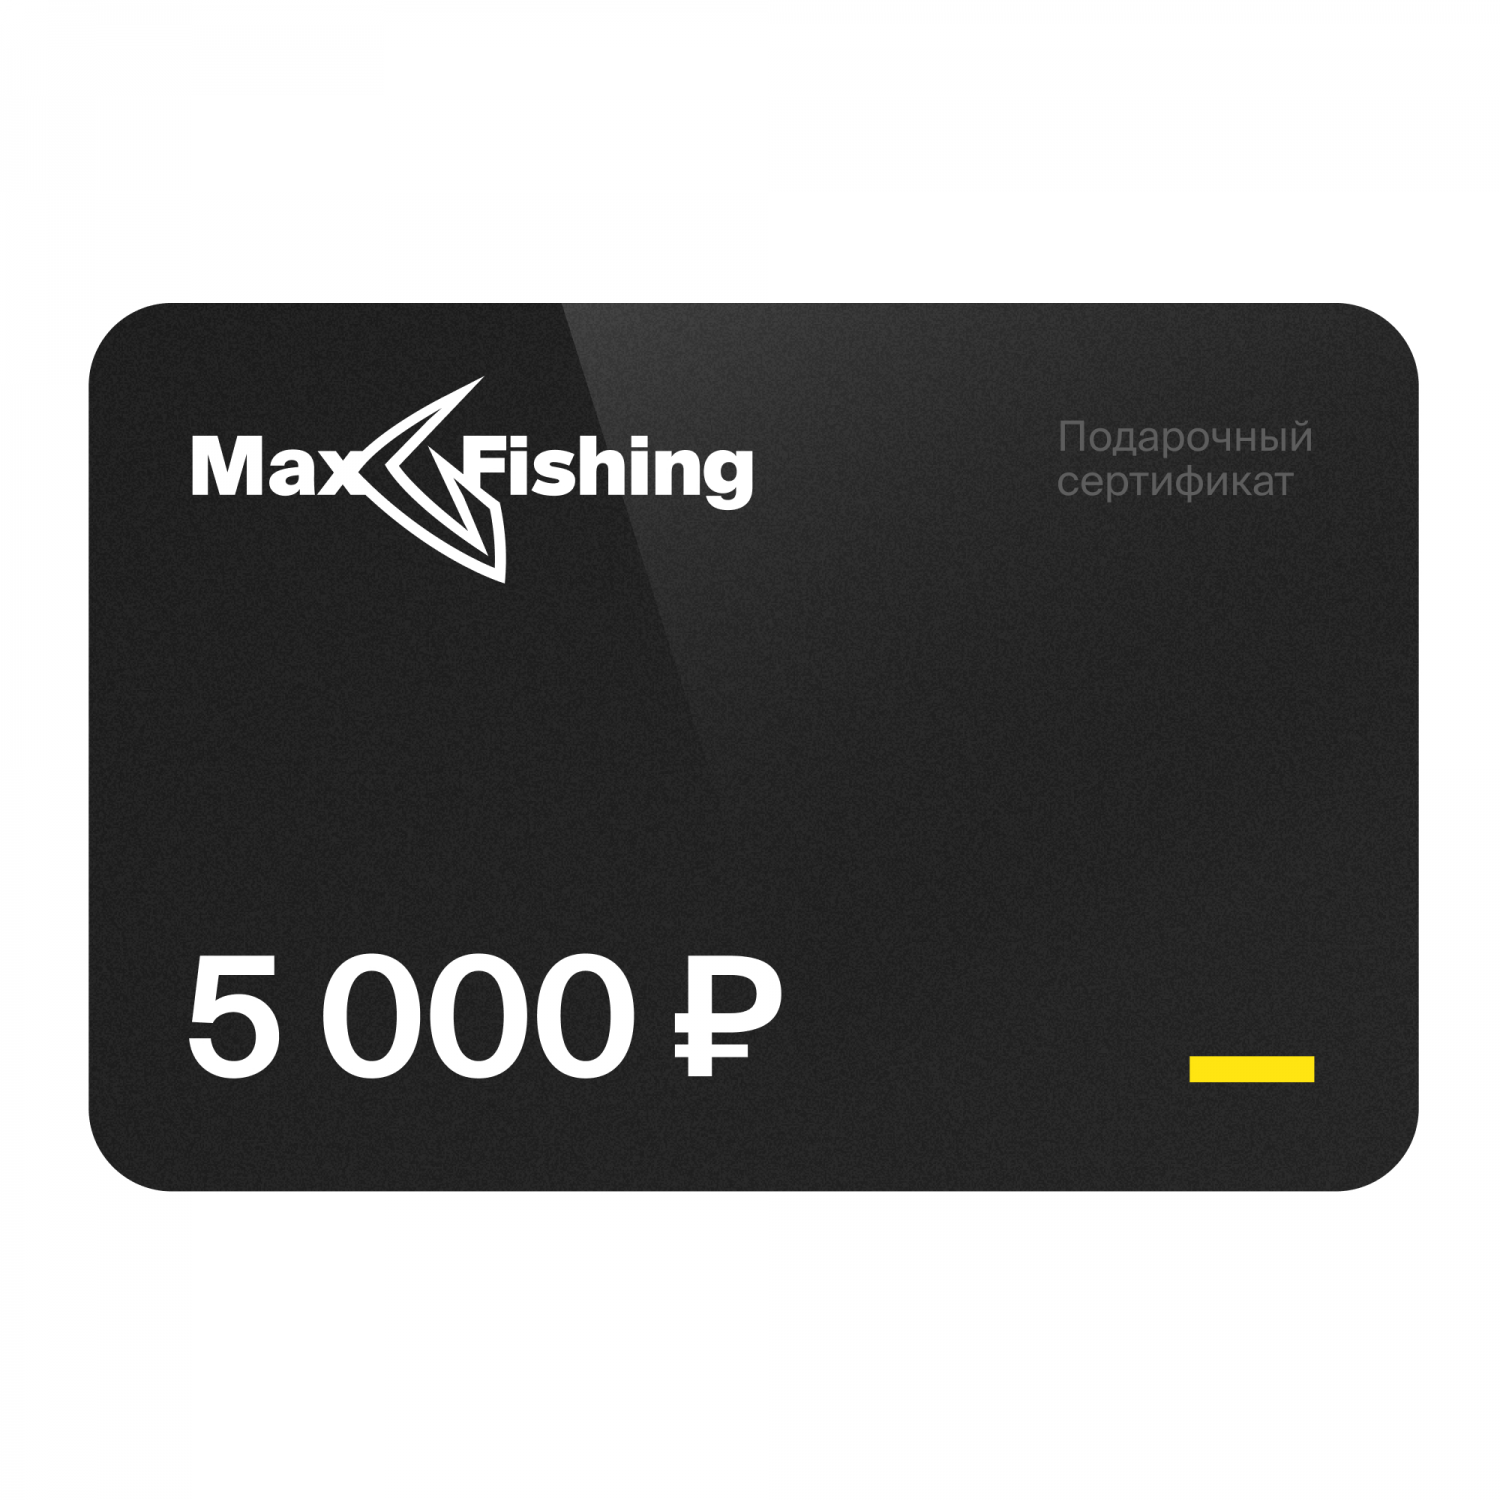 Подарочный сертификат MaxFishing 5 000 ₽ подарочный сертификат maxfishing 15